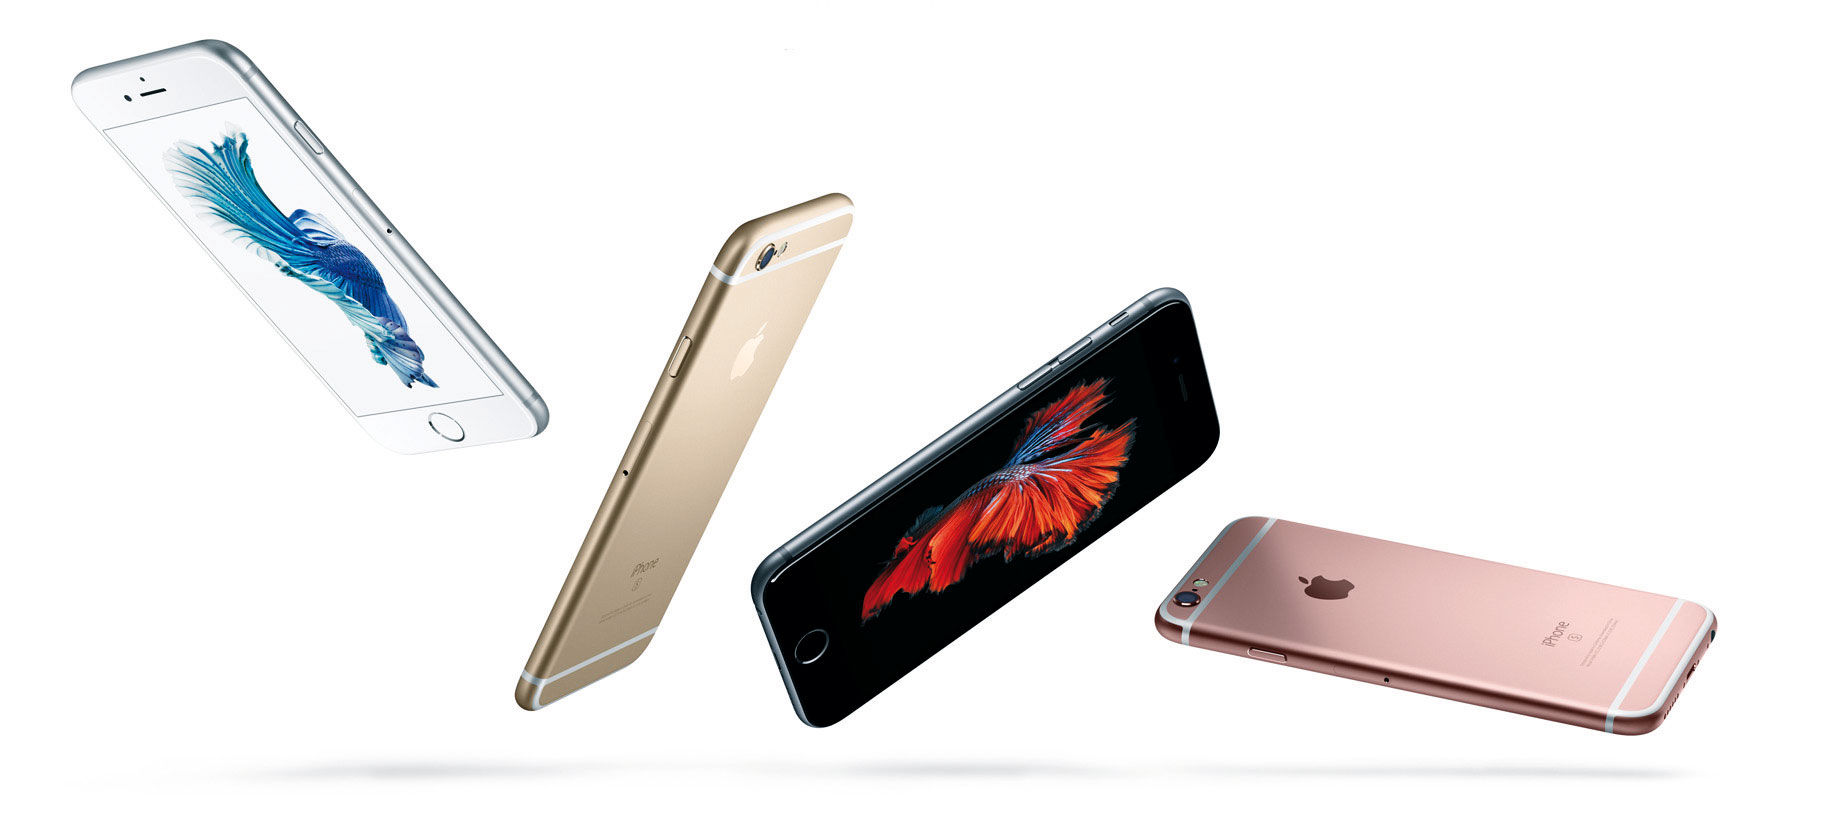 Apple ueberholt Samsung beim Smartphone-Absatz - Bild 1